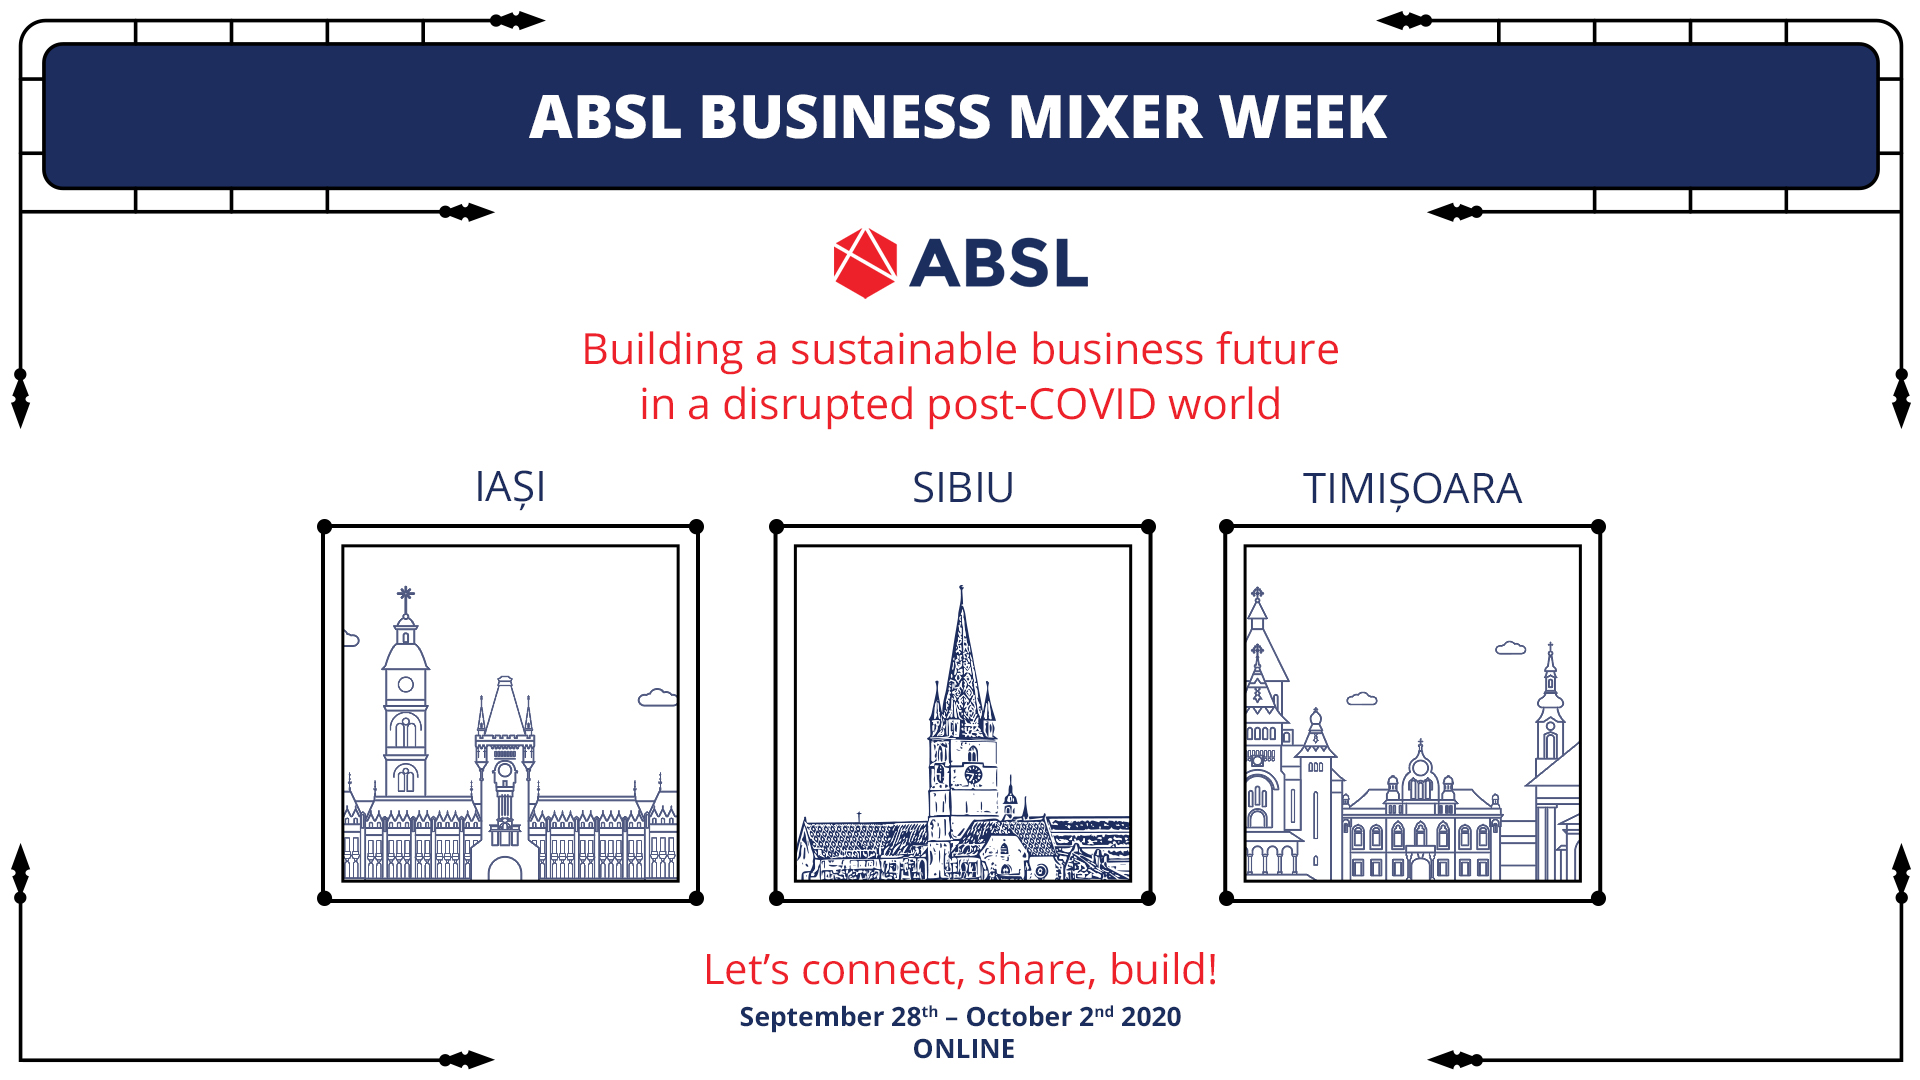 ABSL-Business-Mixer-Week-2020_1920x1080